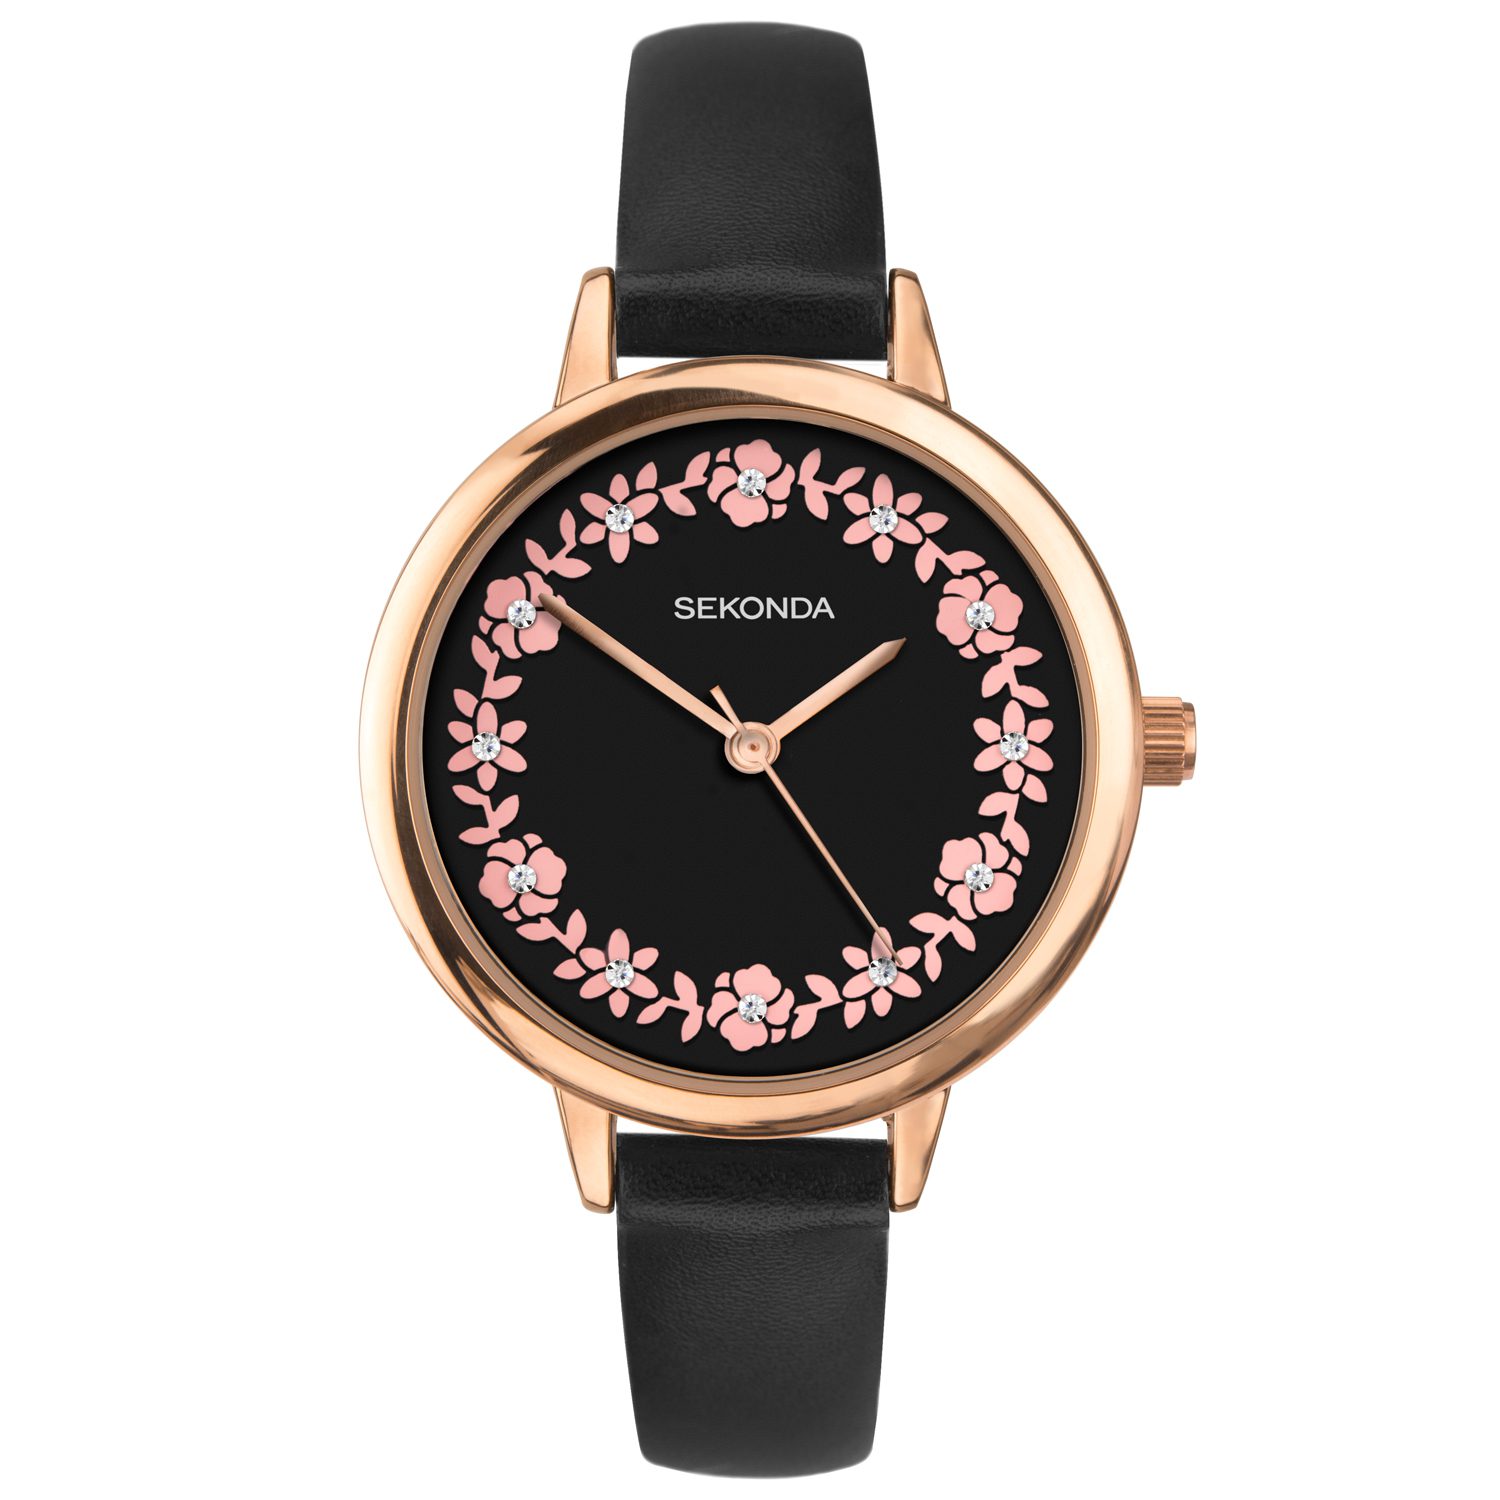 Seconda horloge voor dames met bloemen en een leder armband 2818.8